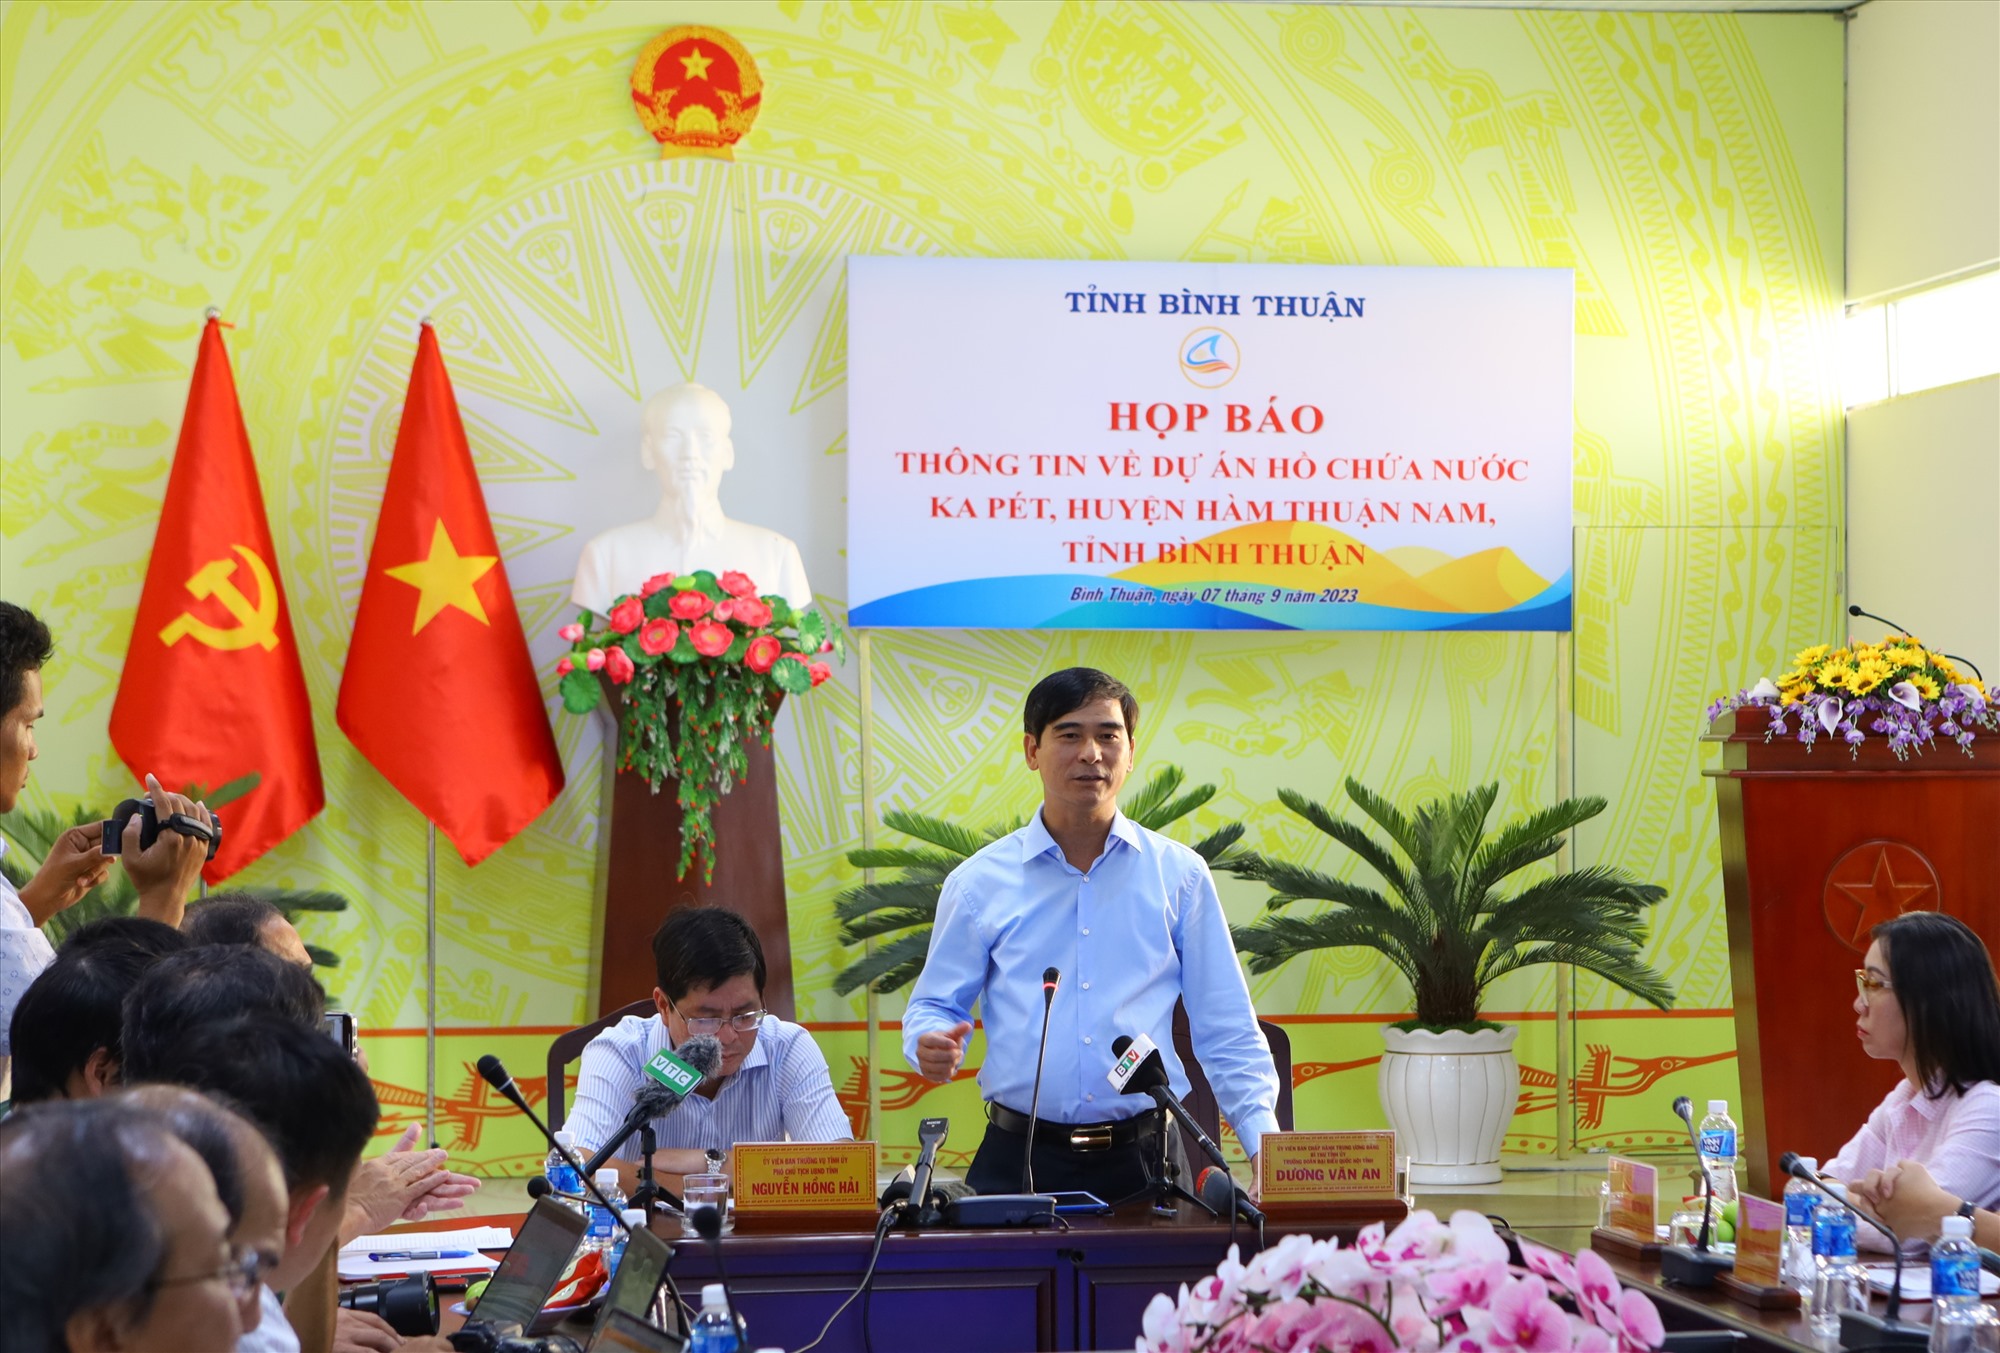 Ông Dương Văn An, Bí thư Tỉnh ủy, Trưởng đoàn đại biểu Quốc hội tỉnh Bình Thuận chia sẻ một số thông tin về dự án Hồ chứa nước Ka Pét. Ảnh: Duy Tuấn